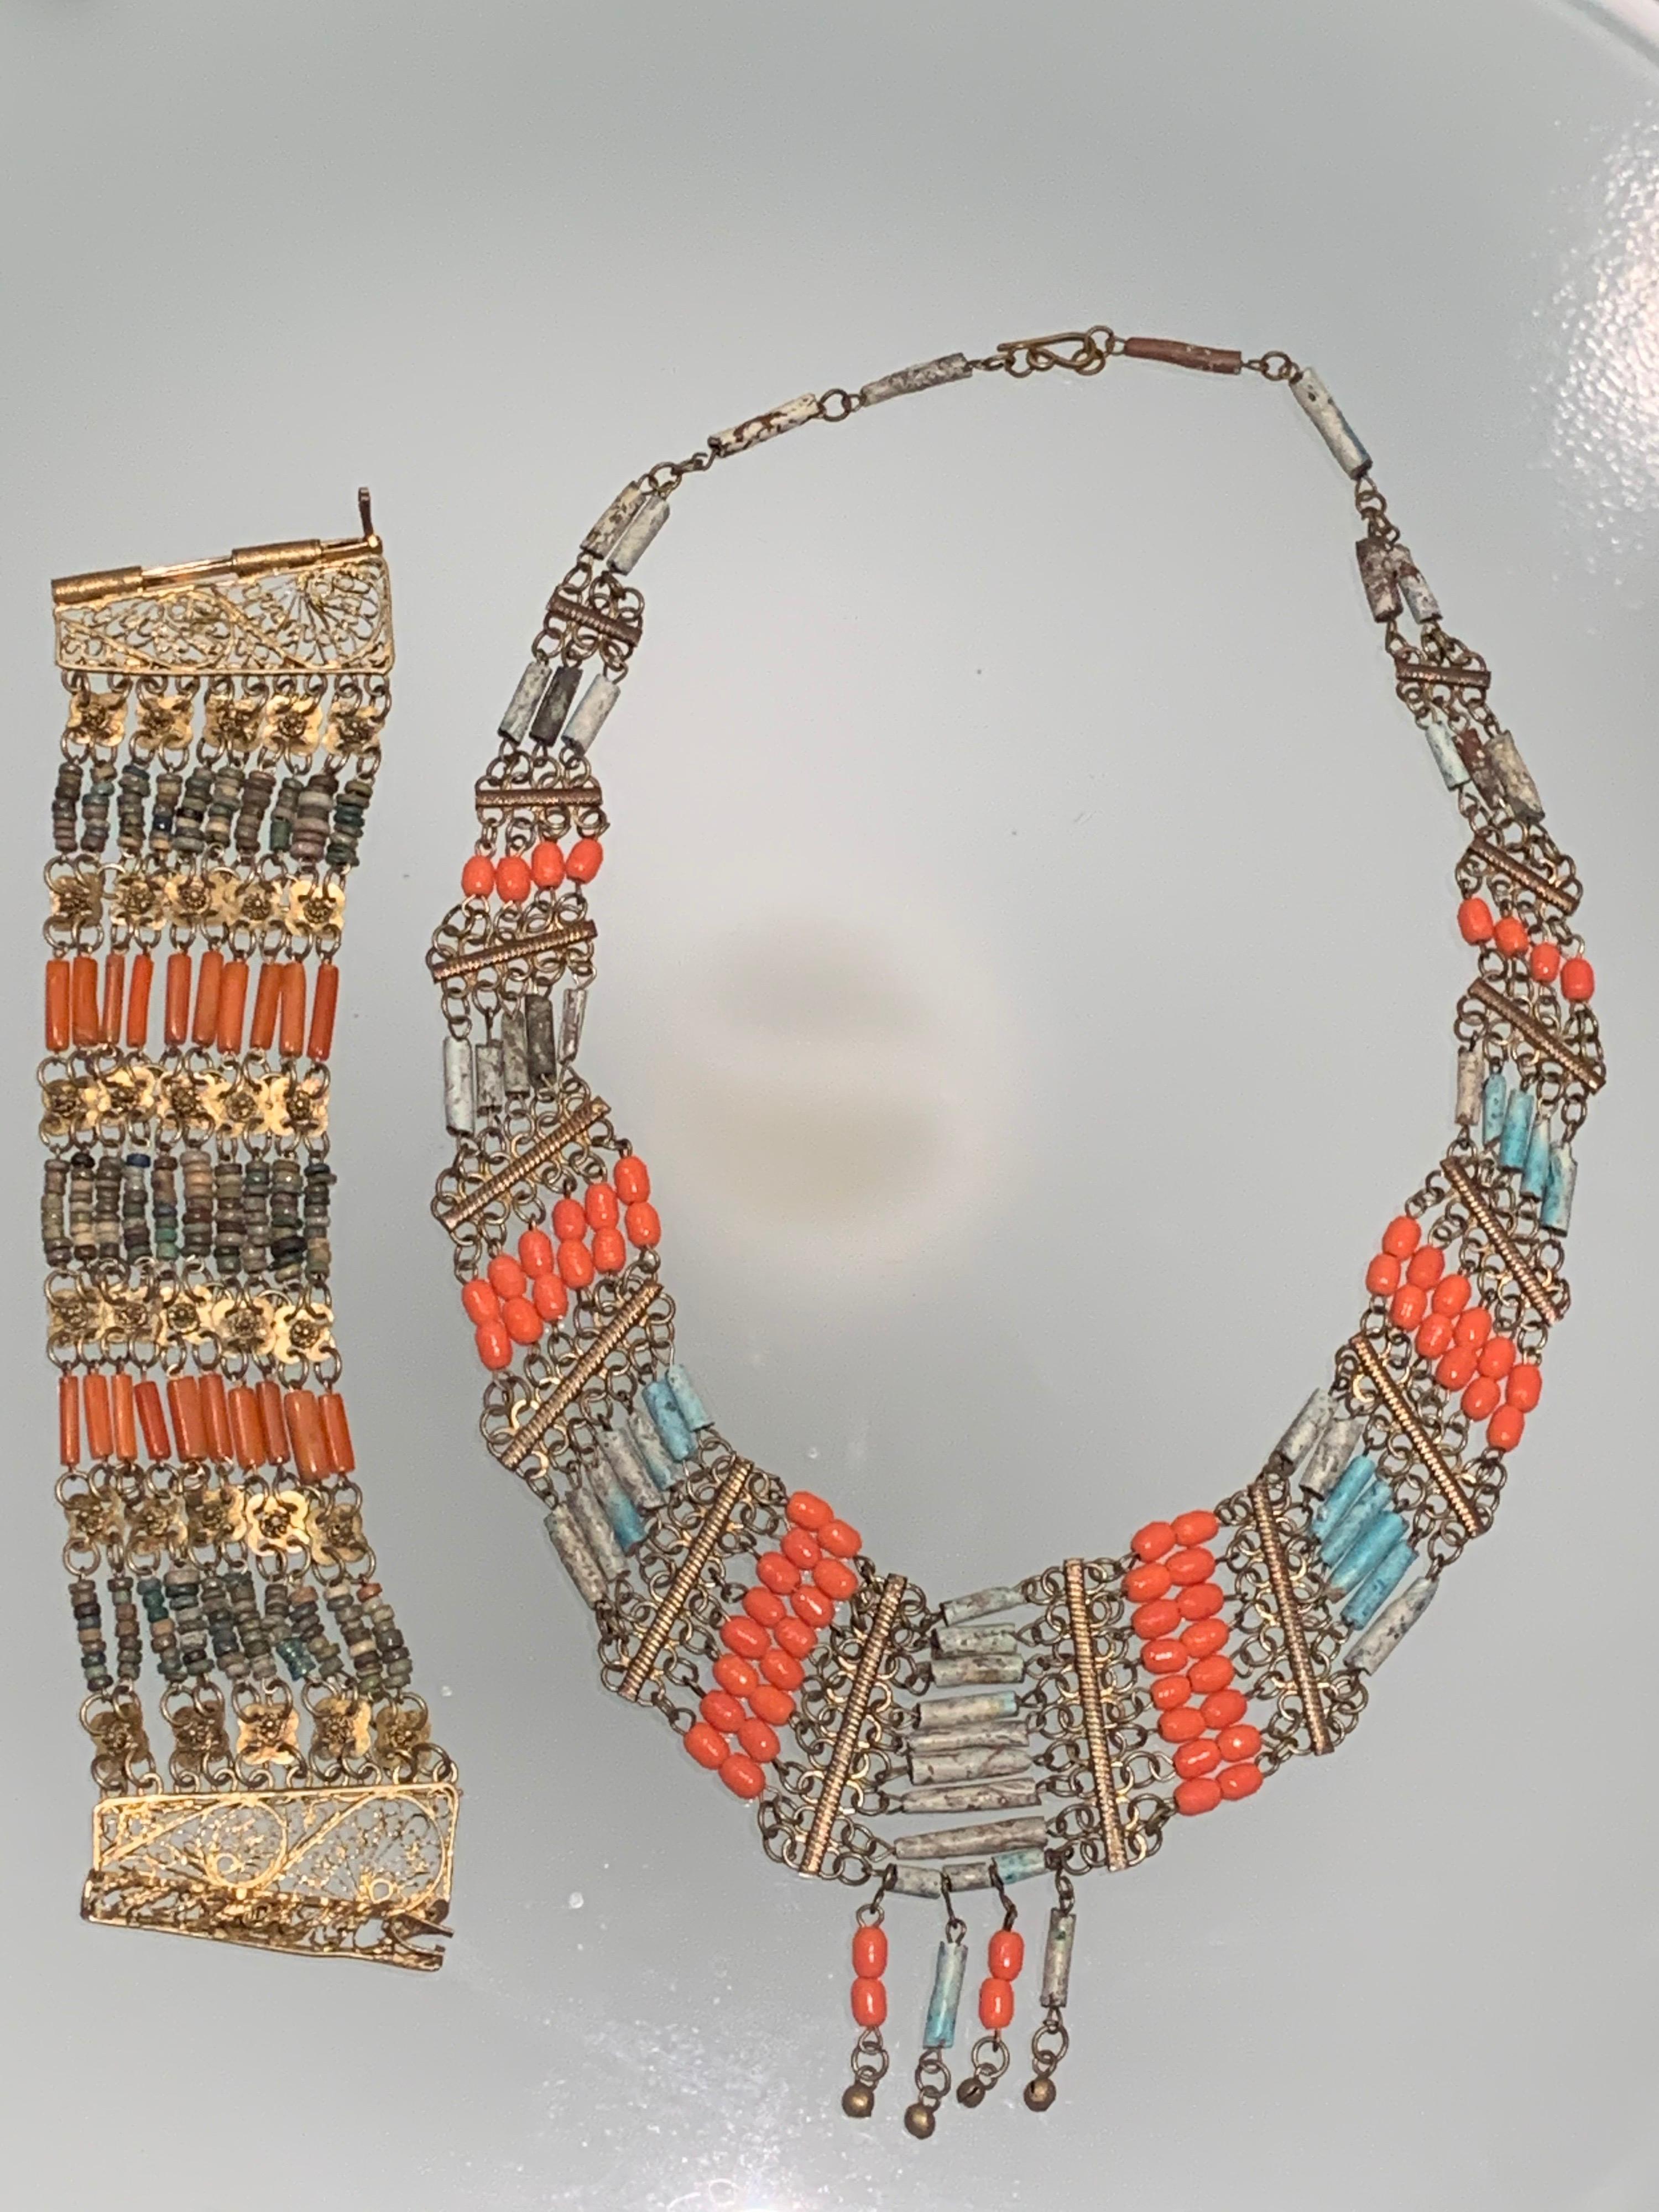 1940er Jahre ägyptischen Ton und Messing filigrane Lätzchen Halskette und Manschette Paarung:  Die Manschette ist breit und hat ein filigranes Scharnier und einen Stiftverschluss. Die Latzkette ist mit Korallen- und Türkistönen in Tonperlen